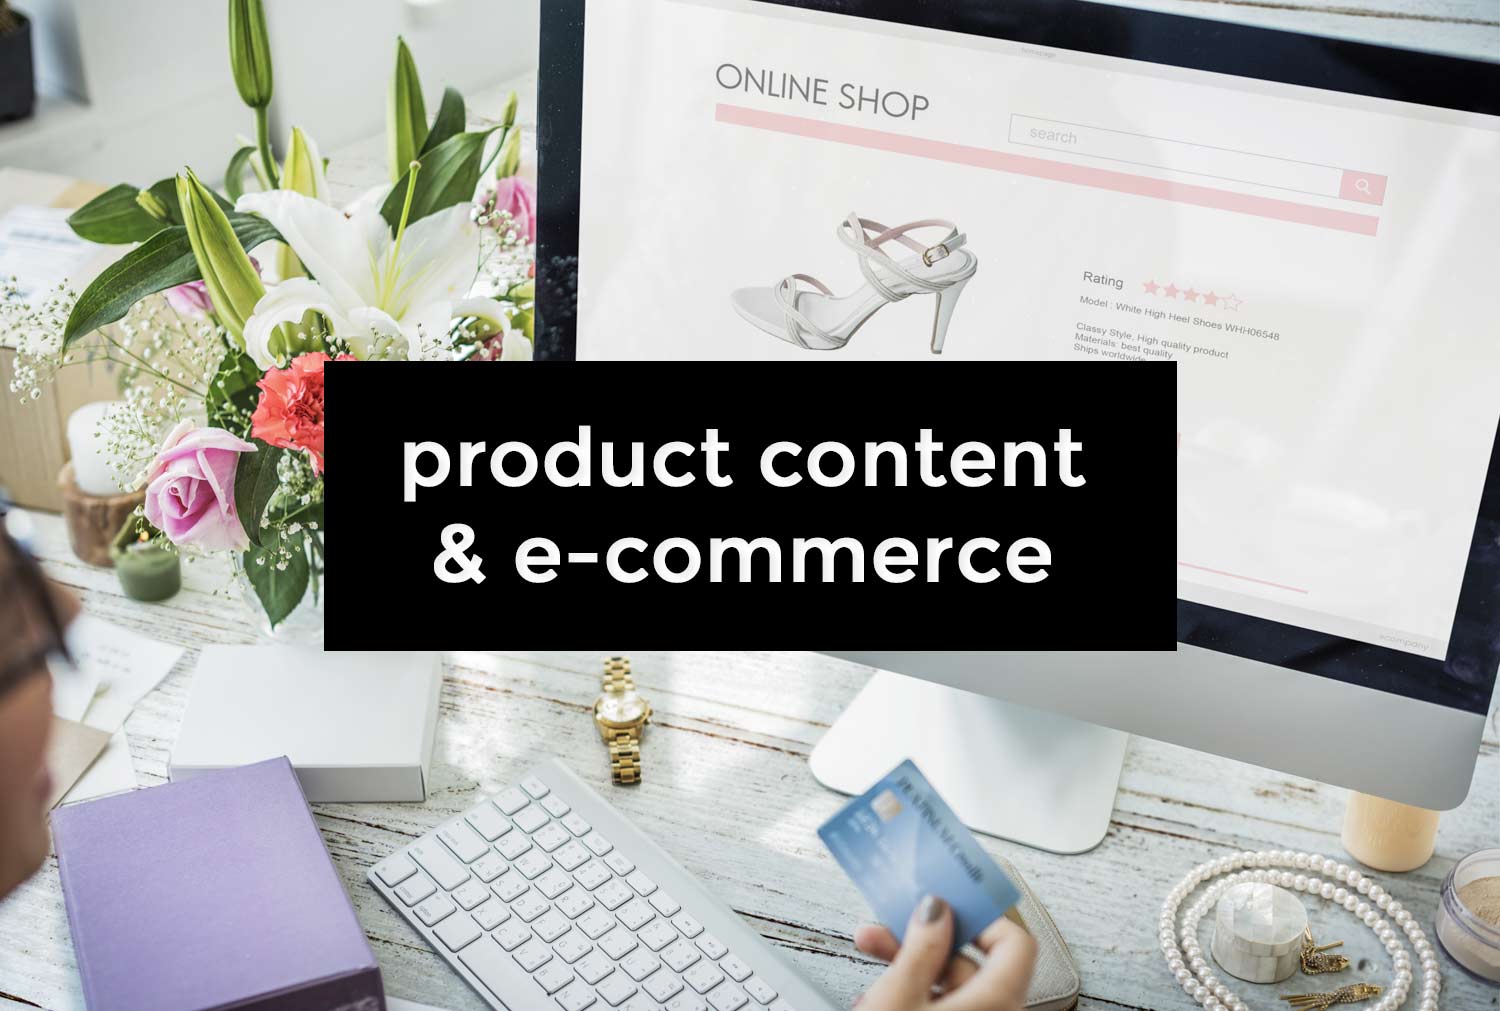 Product content : définition et avantages pour l’e-commerce